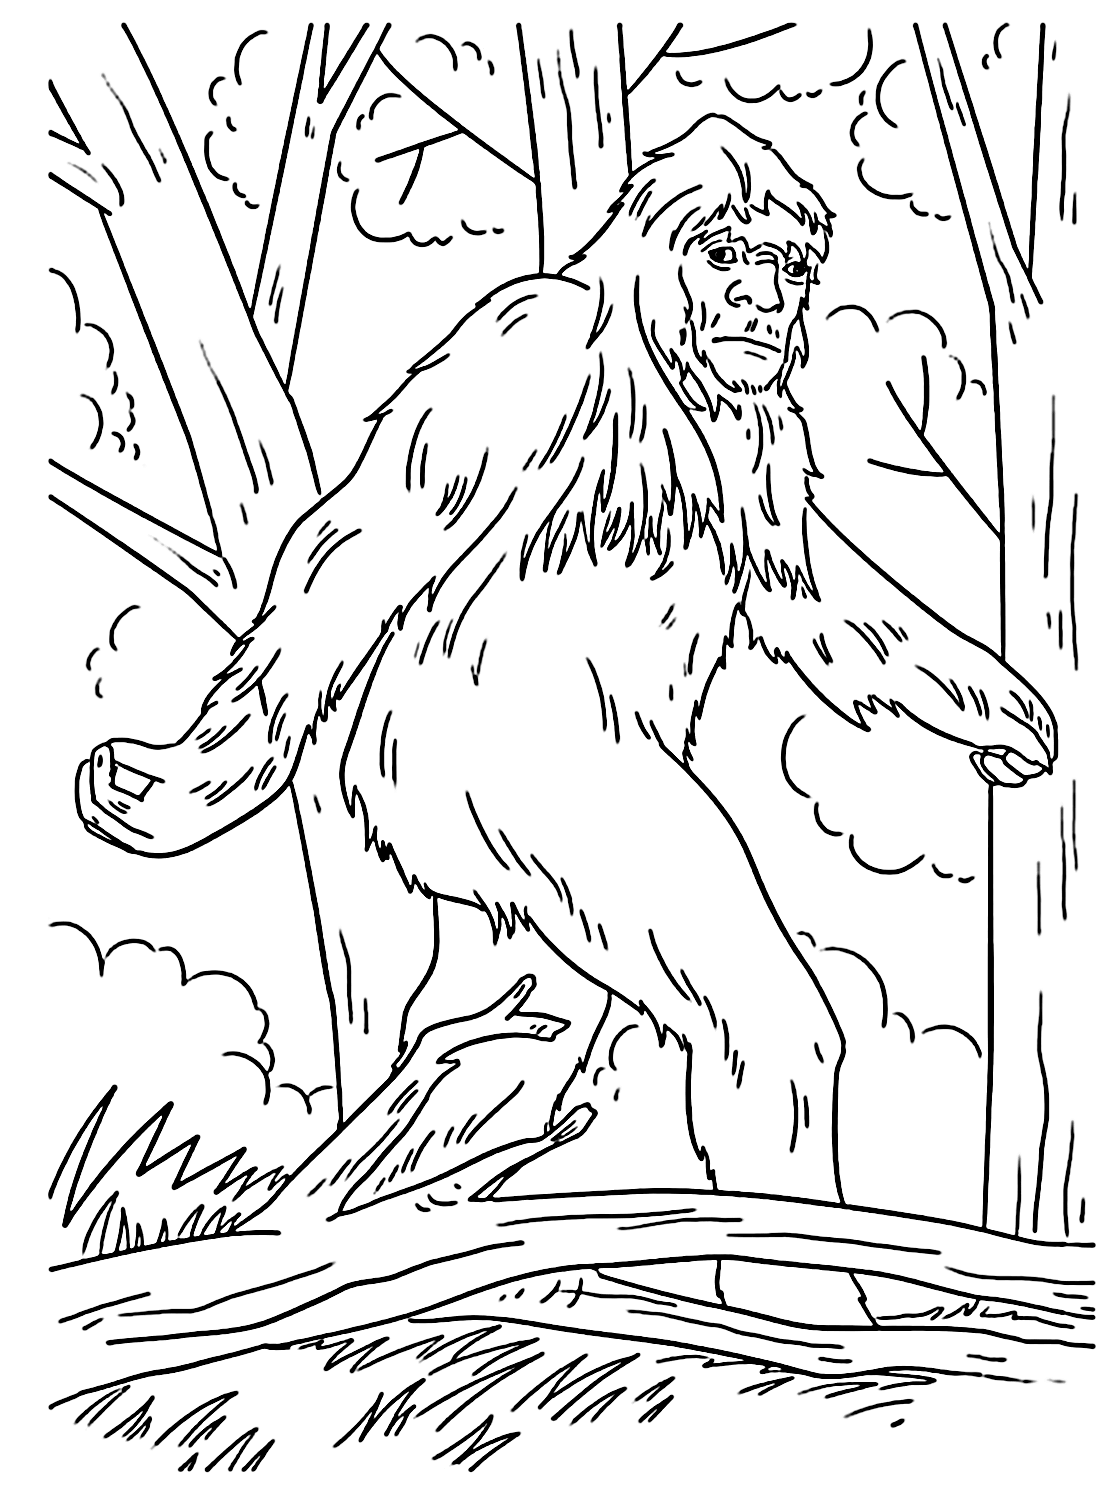 Bigfoot-Malvorlage zum Ausdrucken von Bigfoot